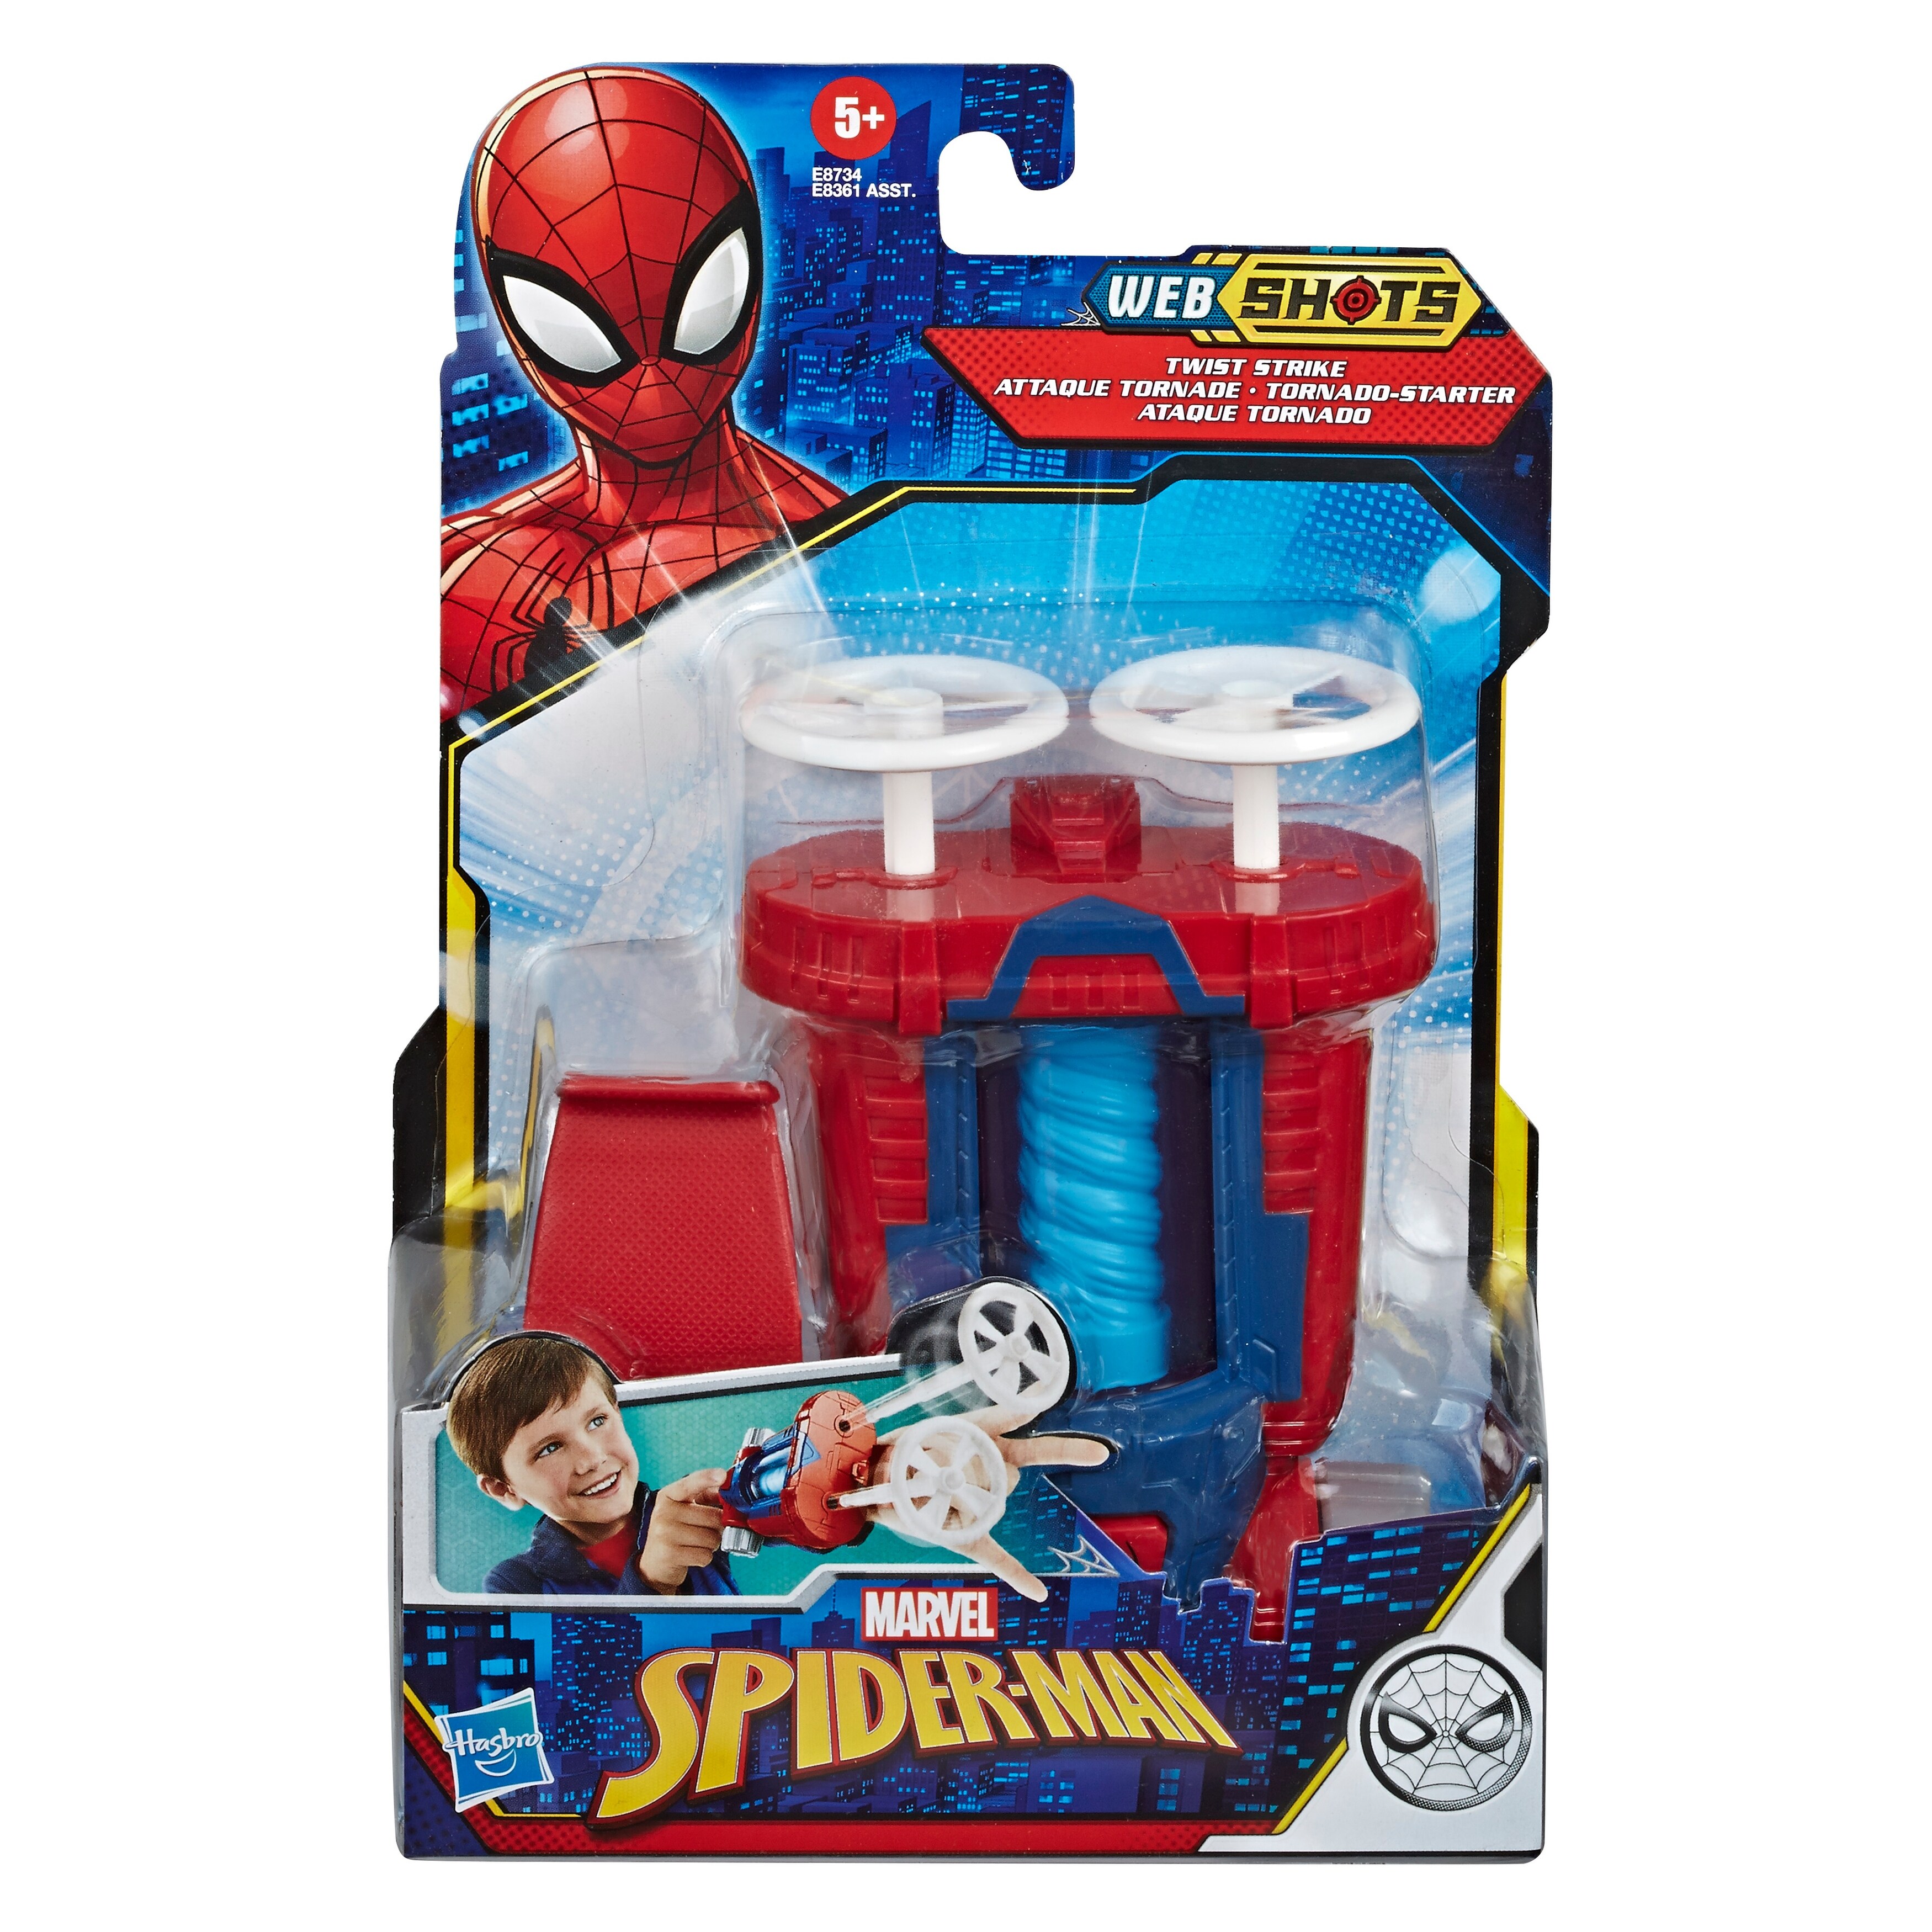 spider man blaster toy